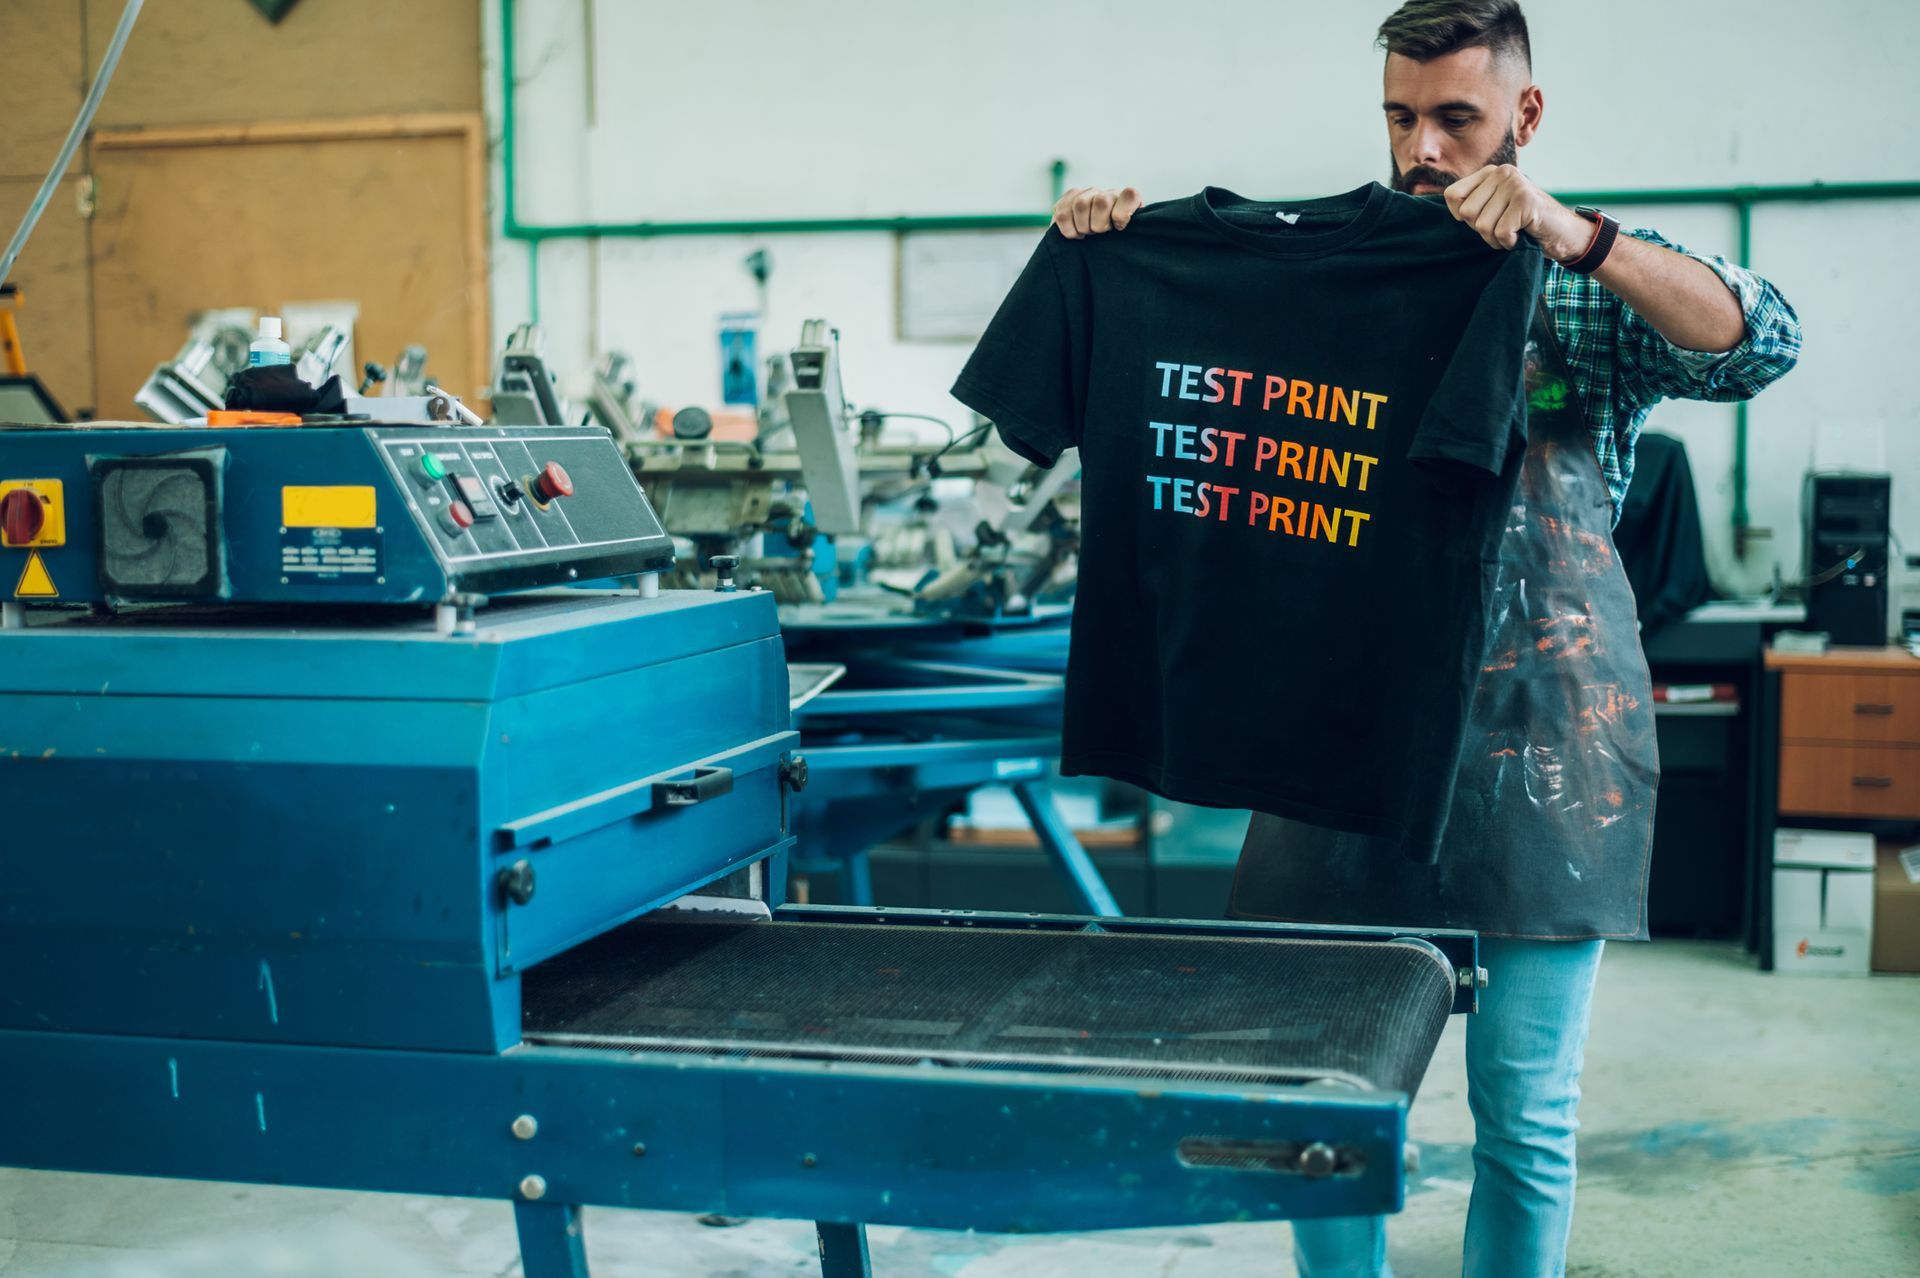 un hombre está usando una máquina de prensado en caliente para hacer una camiseta.